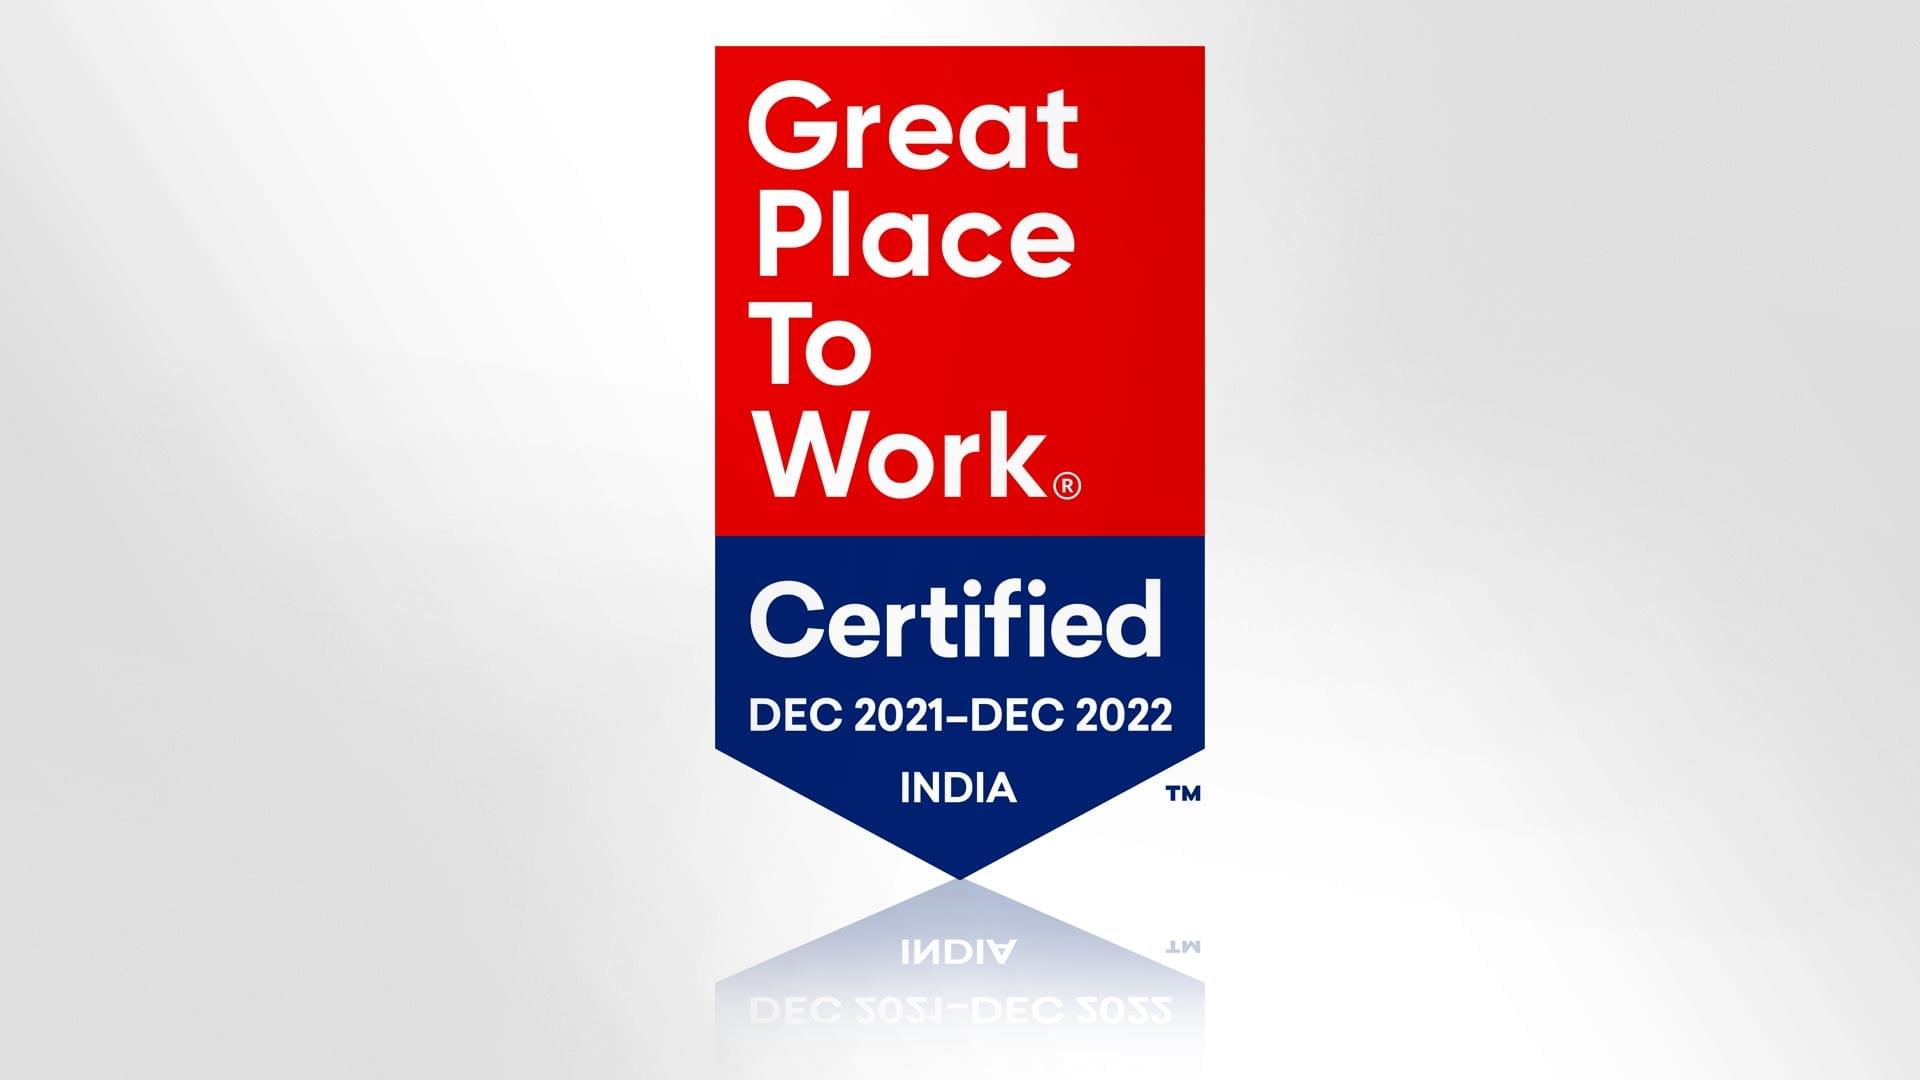 Zertifikat mit der Aufschrift "Great Place To Work" und dem Zertifizierungszeitraum Dezember 2021 bis Dezember 2022.